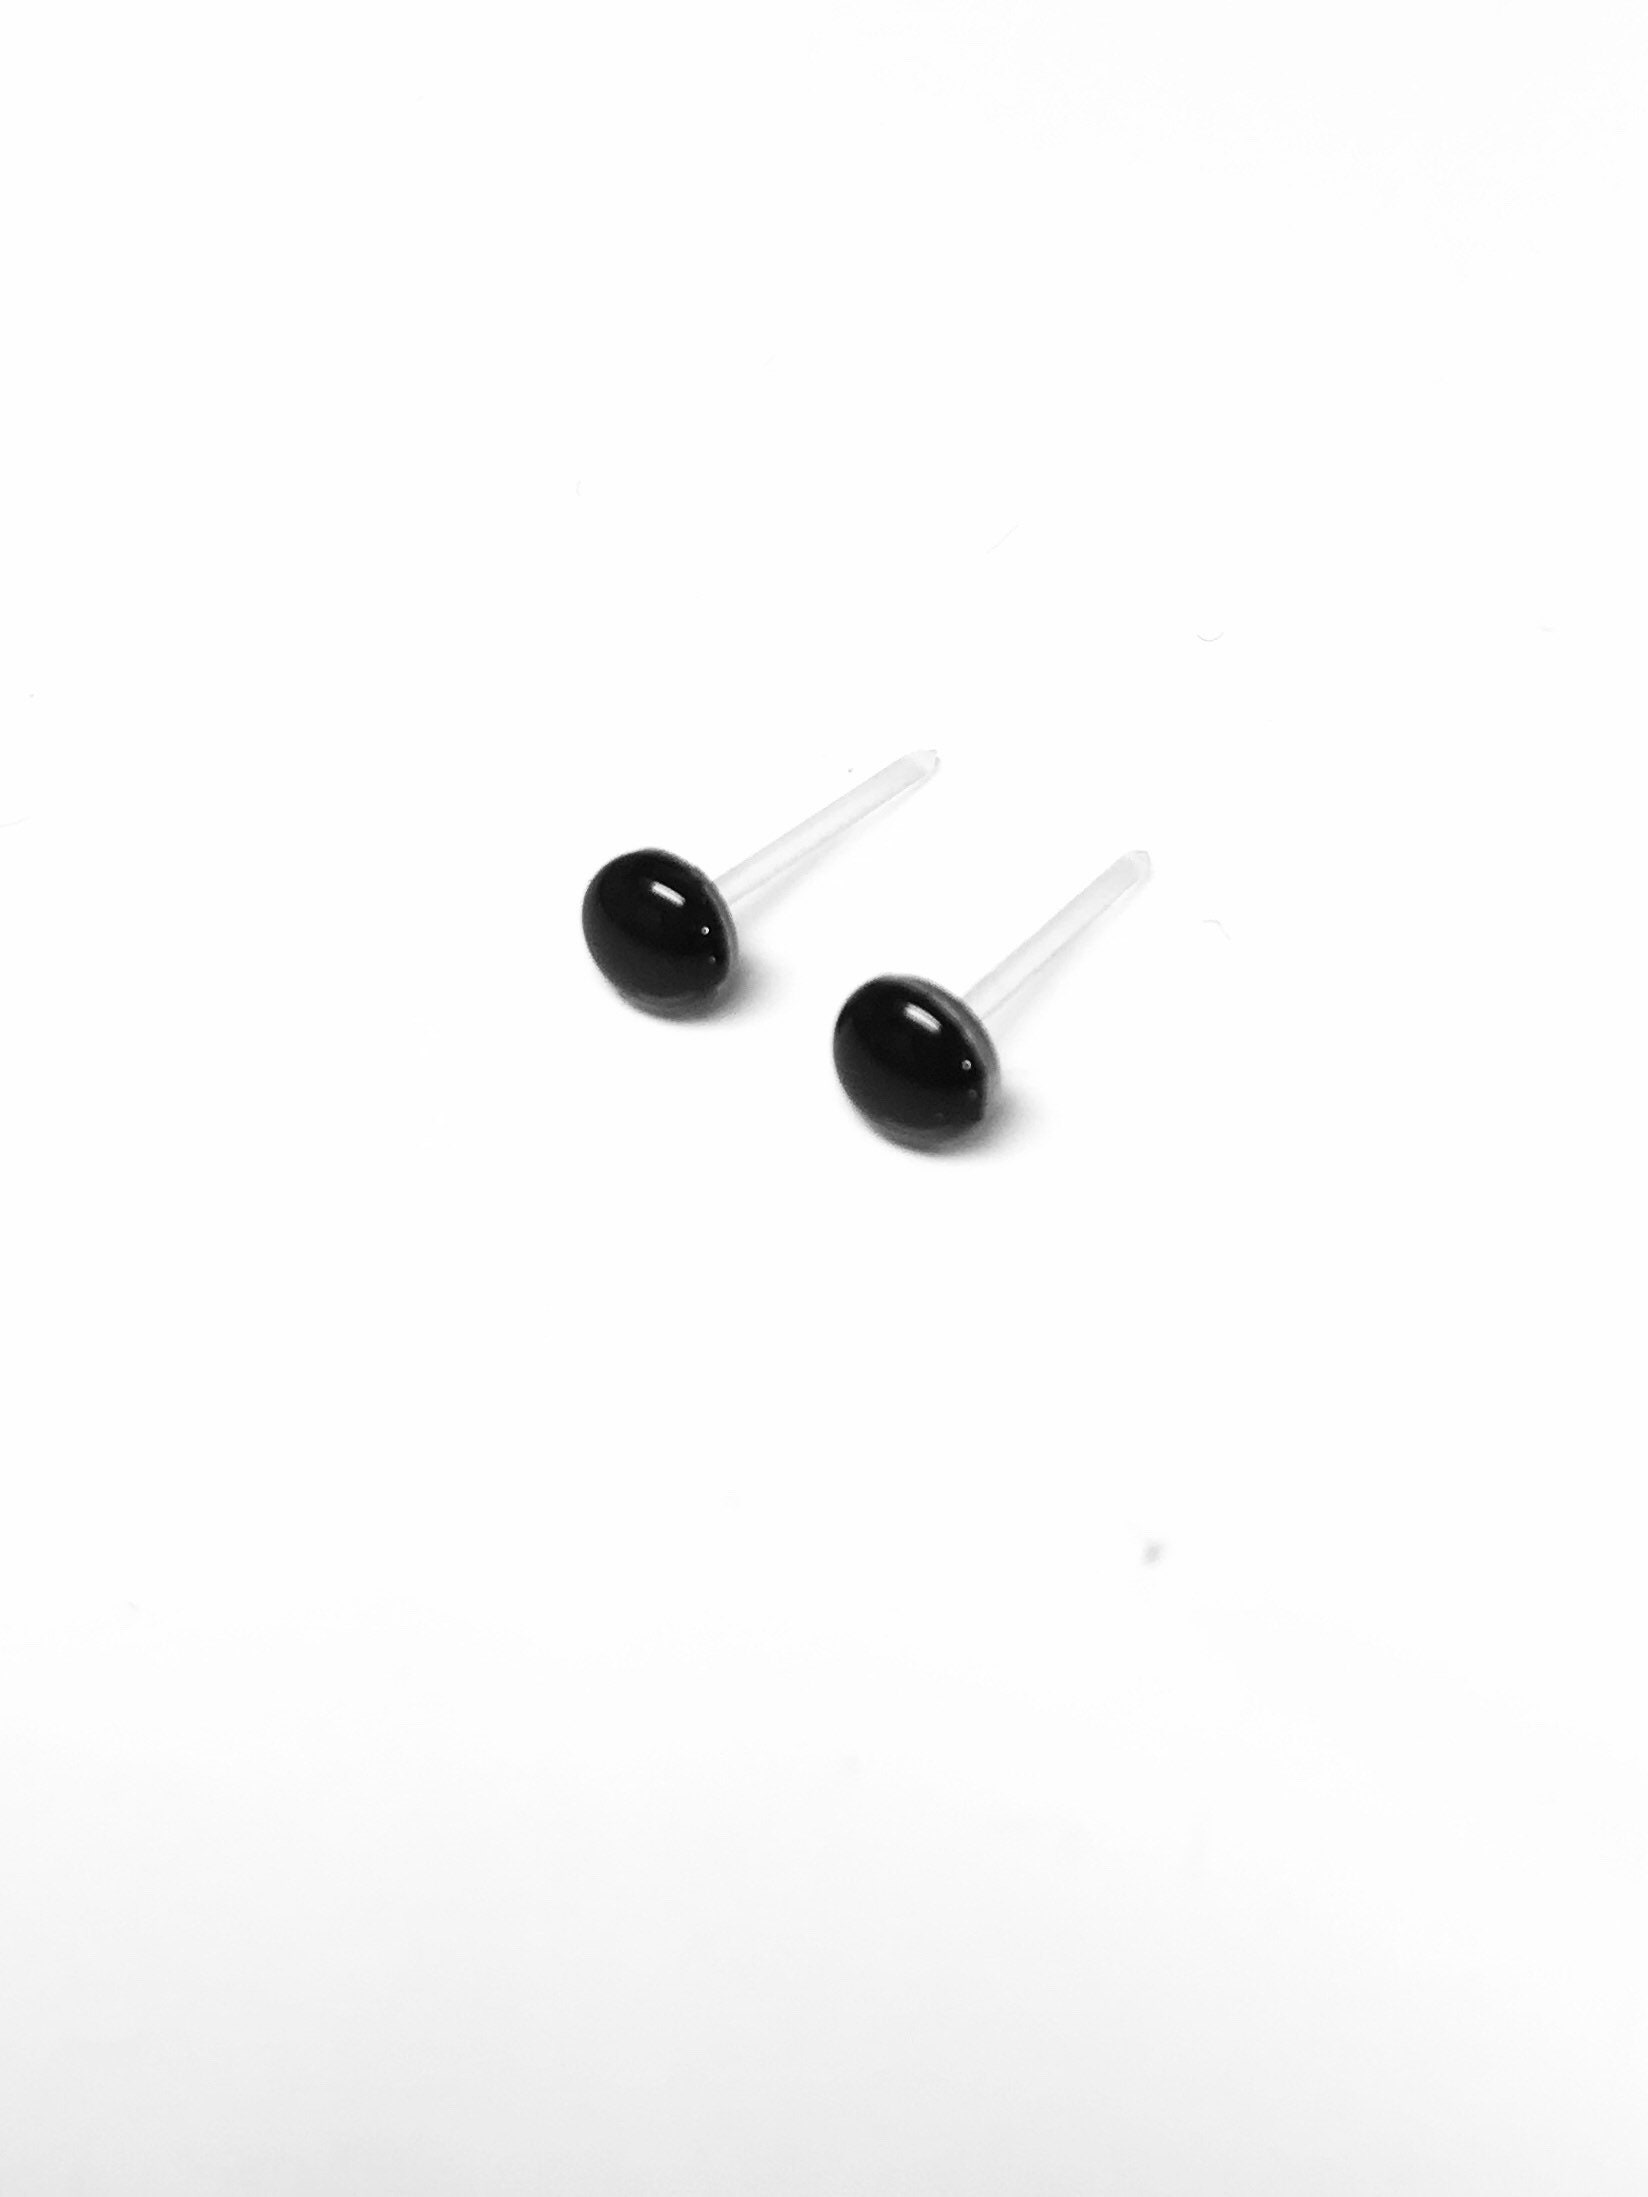 Black Earrings for Sensitive Ears Plastic Post Earrings | Etsy